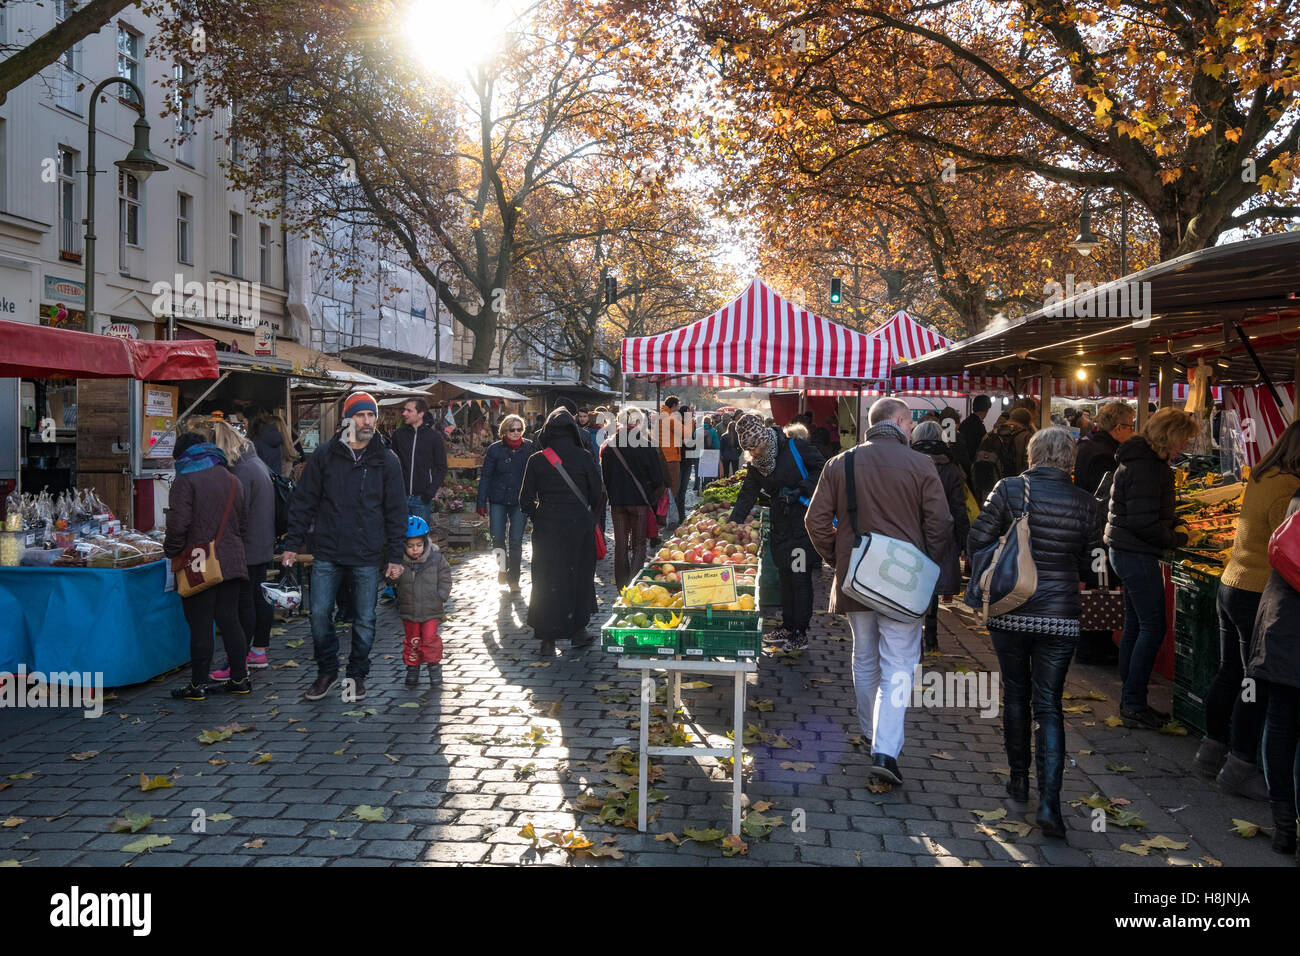 Week-end marché plein air à Kollwitzplatz en automne à Prenzlauer Berg , Berlin, Allemagne Banque D'Images